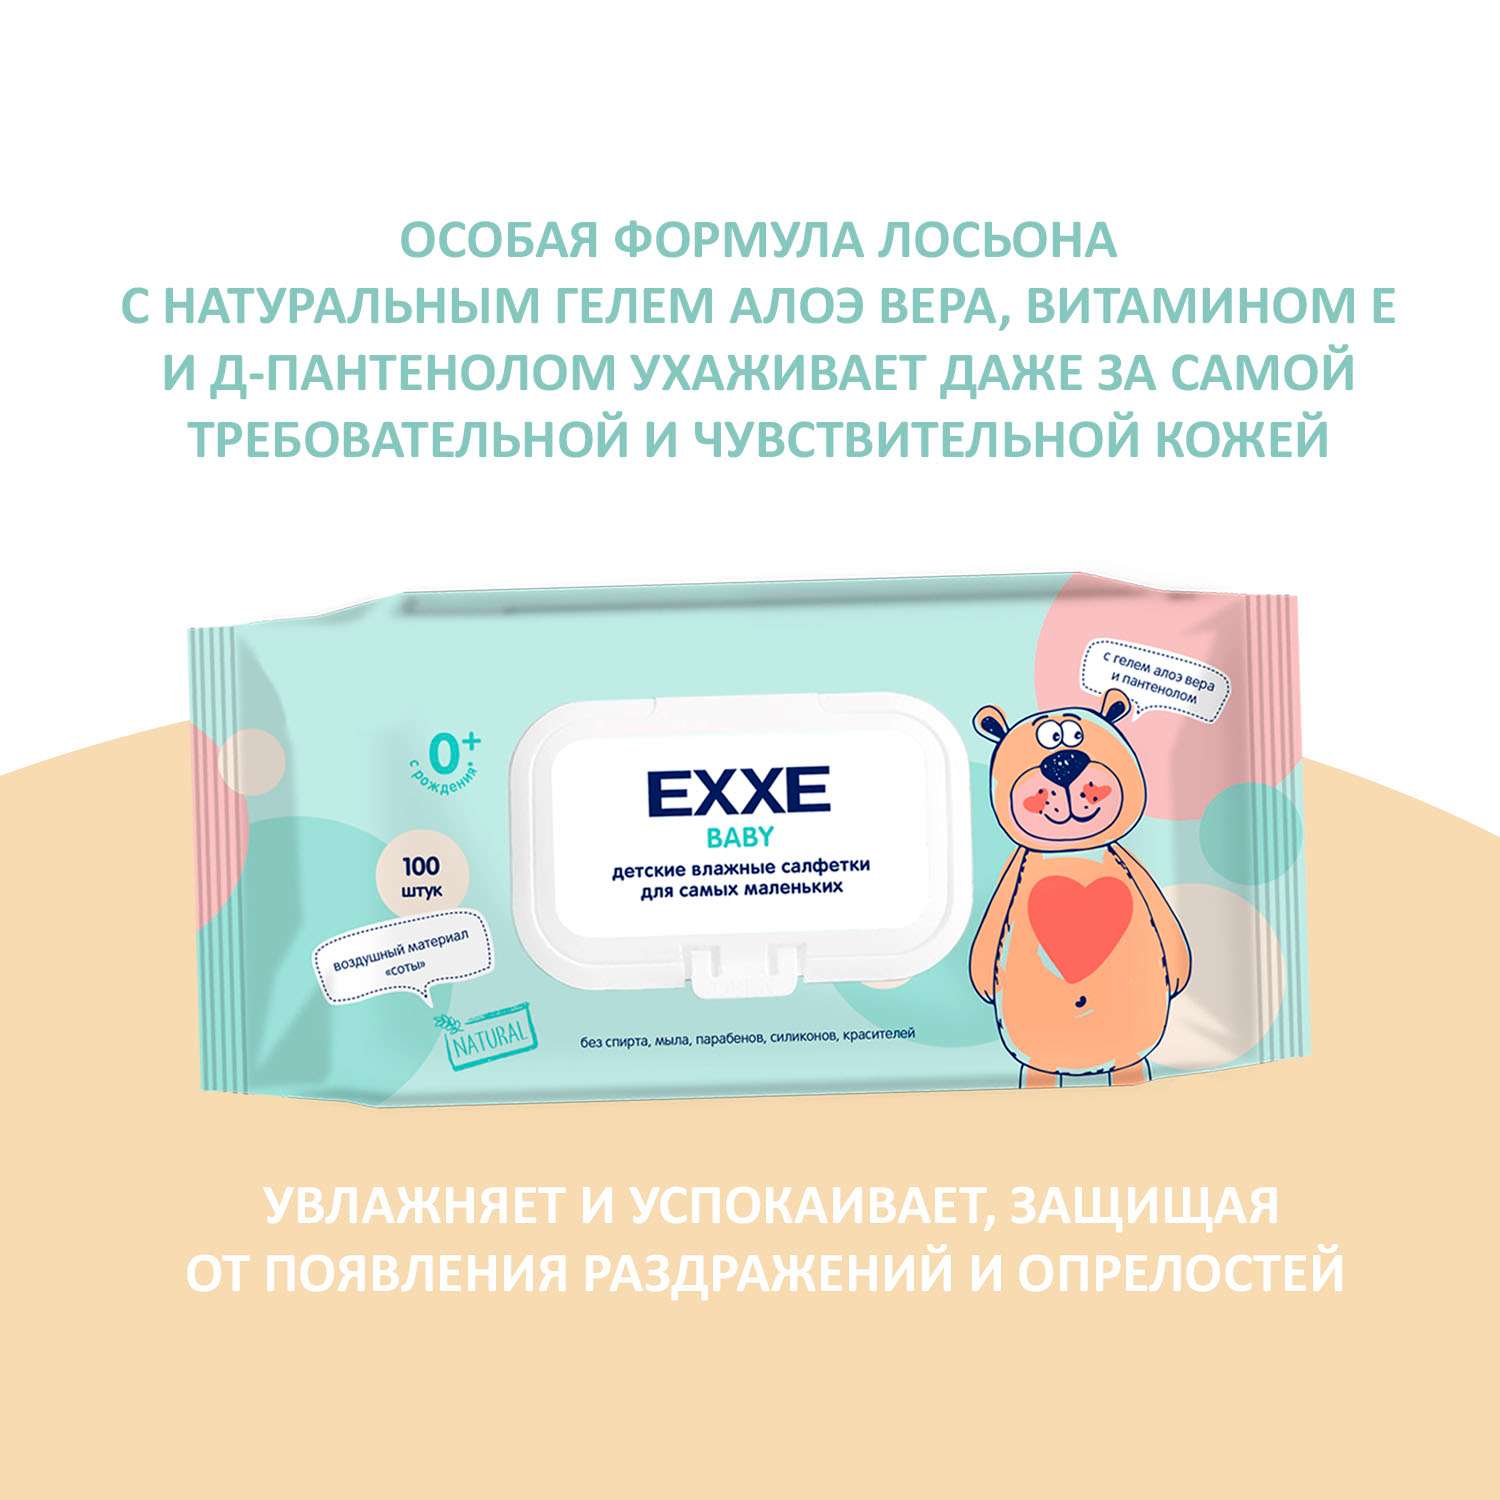 Влажные салфетки ARVITEX EXXE Baby серия 0+ Влажные салфетки для детей 100 штук - фото 4